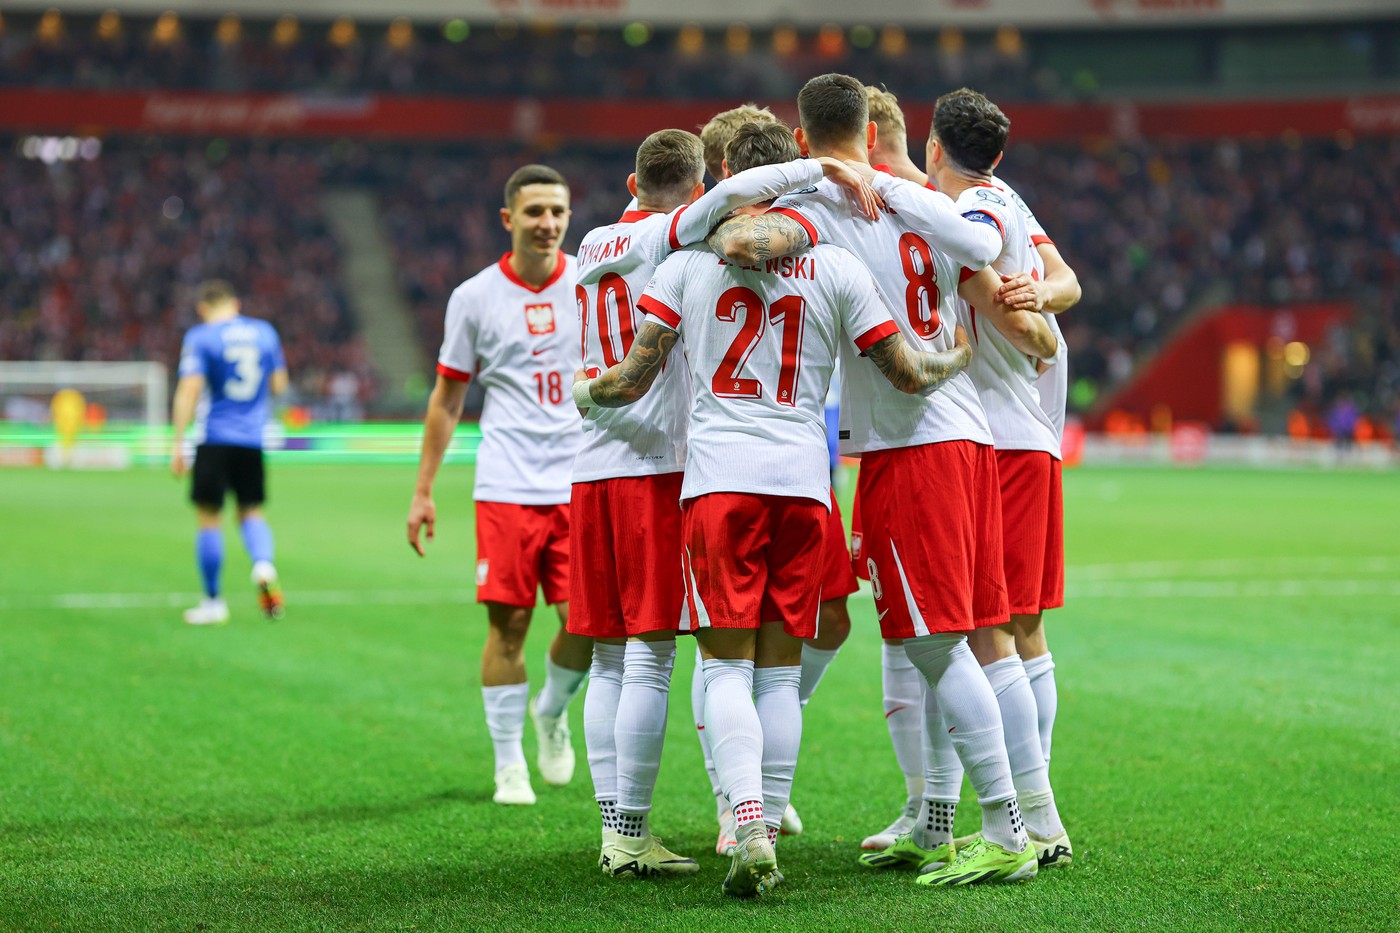 Polonia - Estonia 5-1 și Țara Galilor - Finlanda 4-1, în semifinalele din barajul pentru EURO 2024. Rezultatele complete